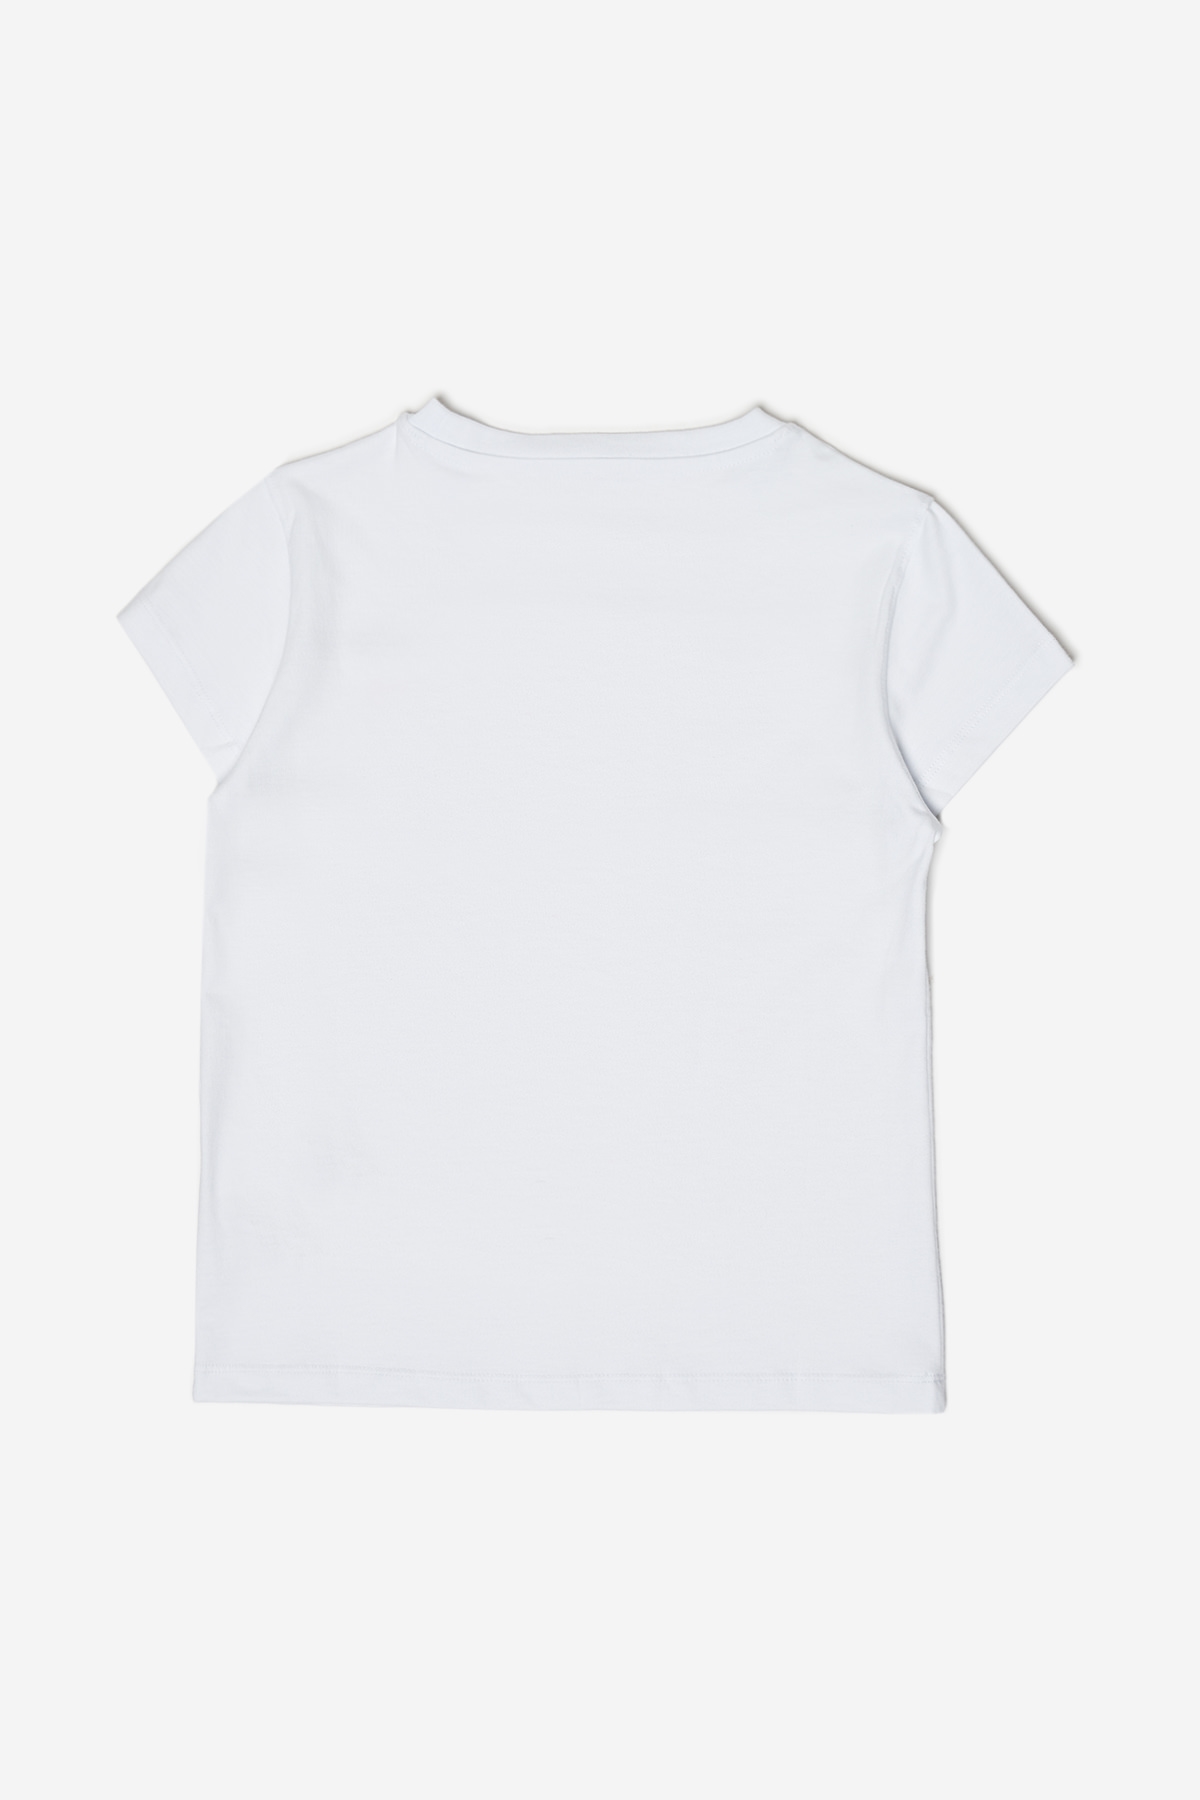 Kız Çocuk Beyaz T-Shirt